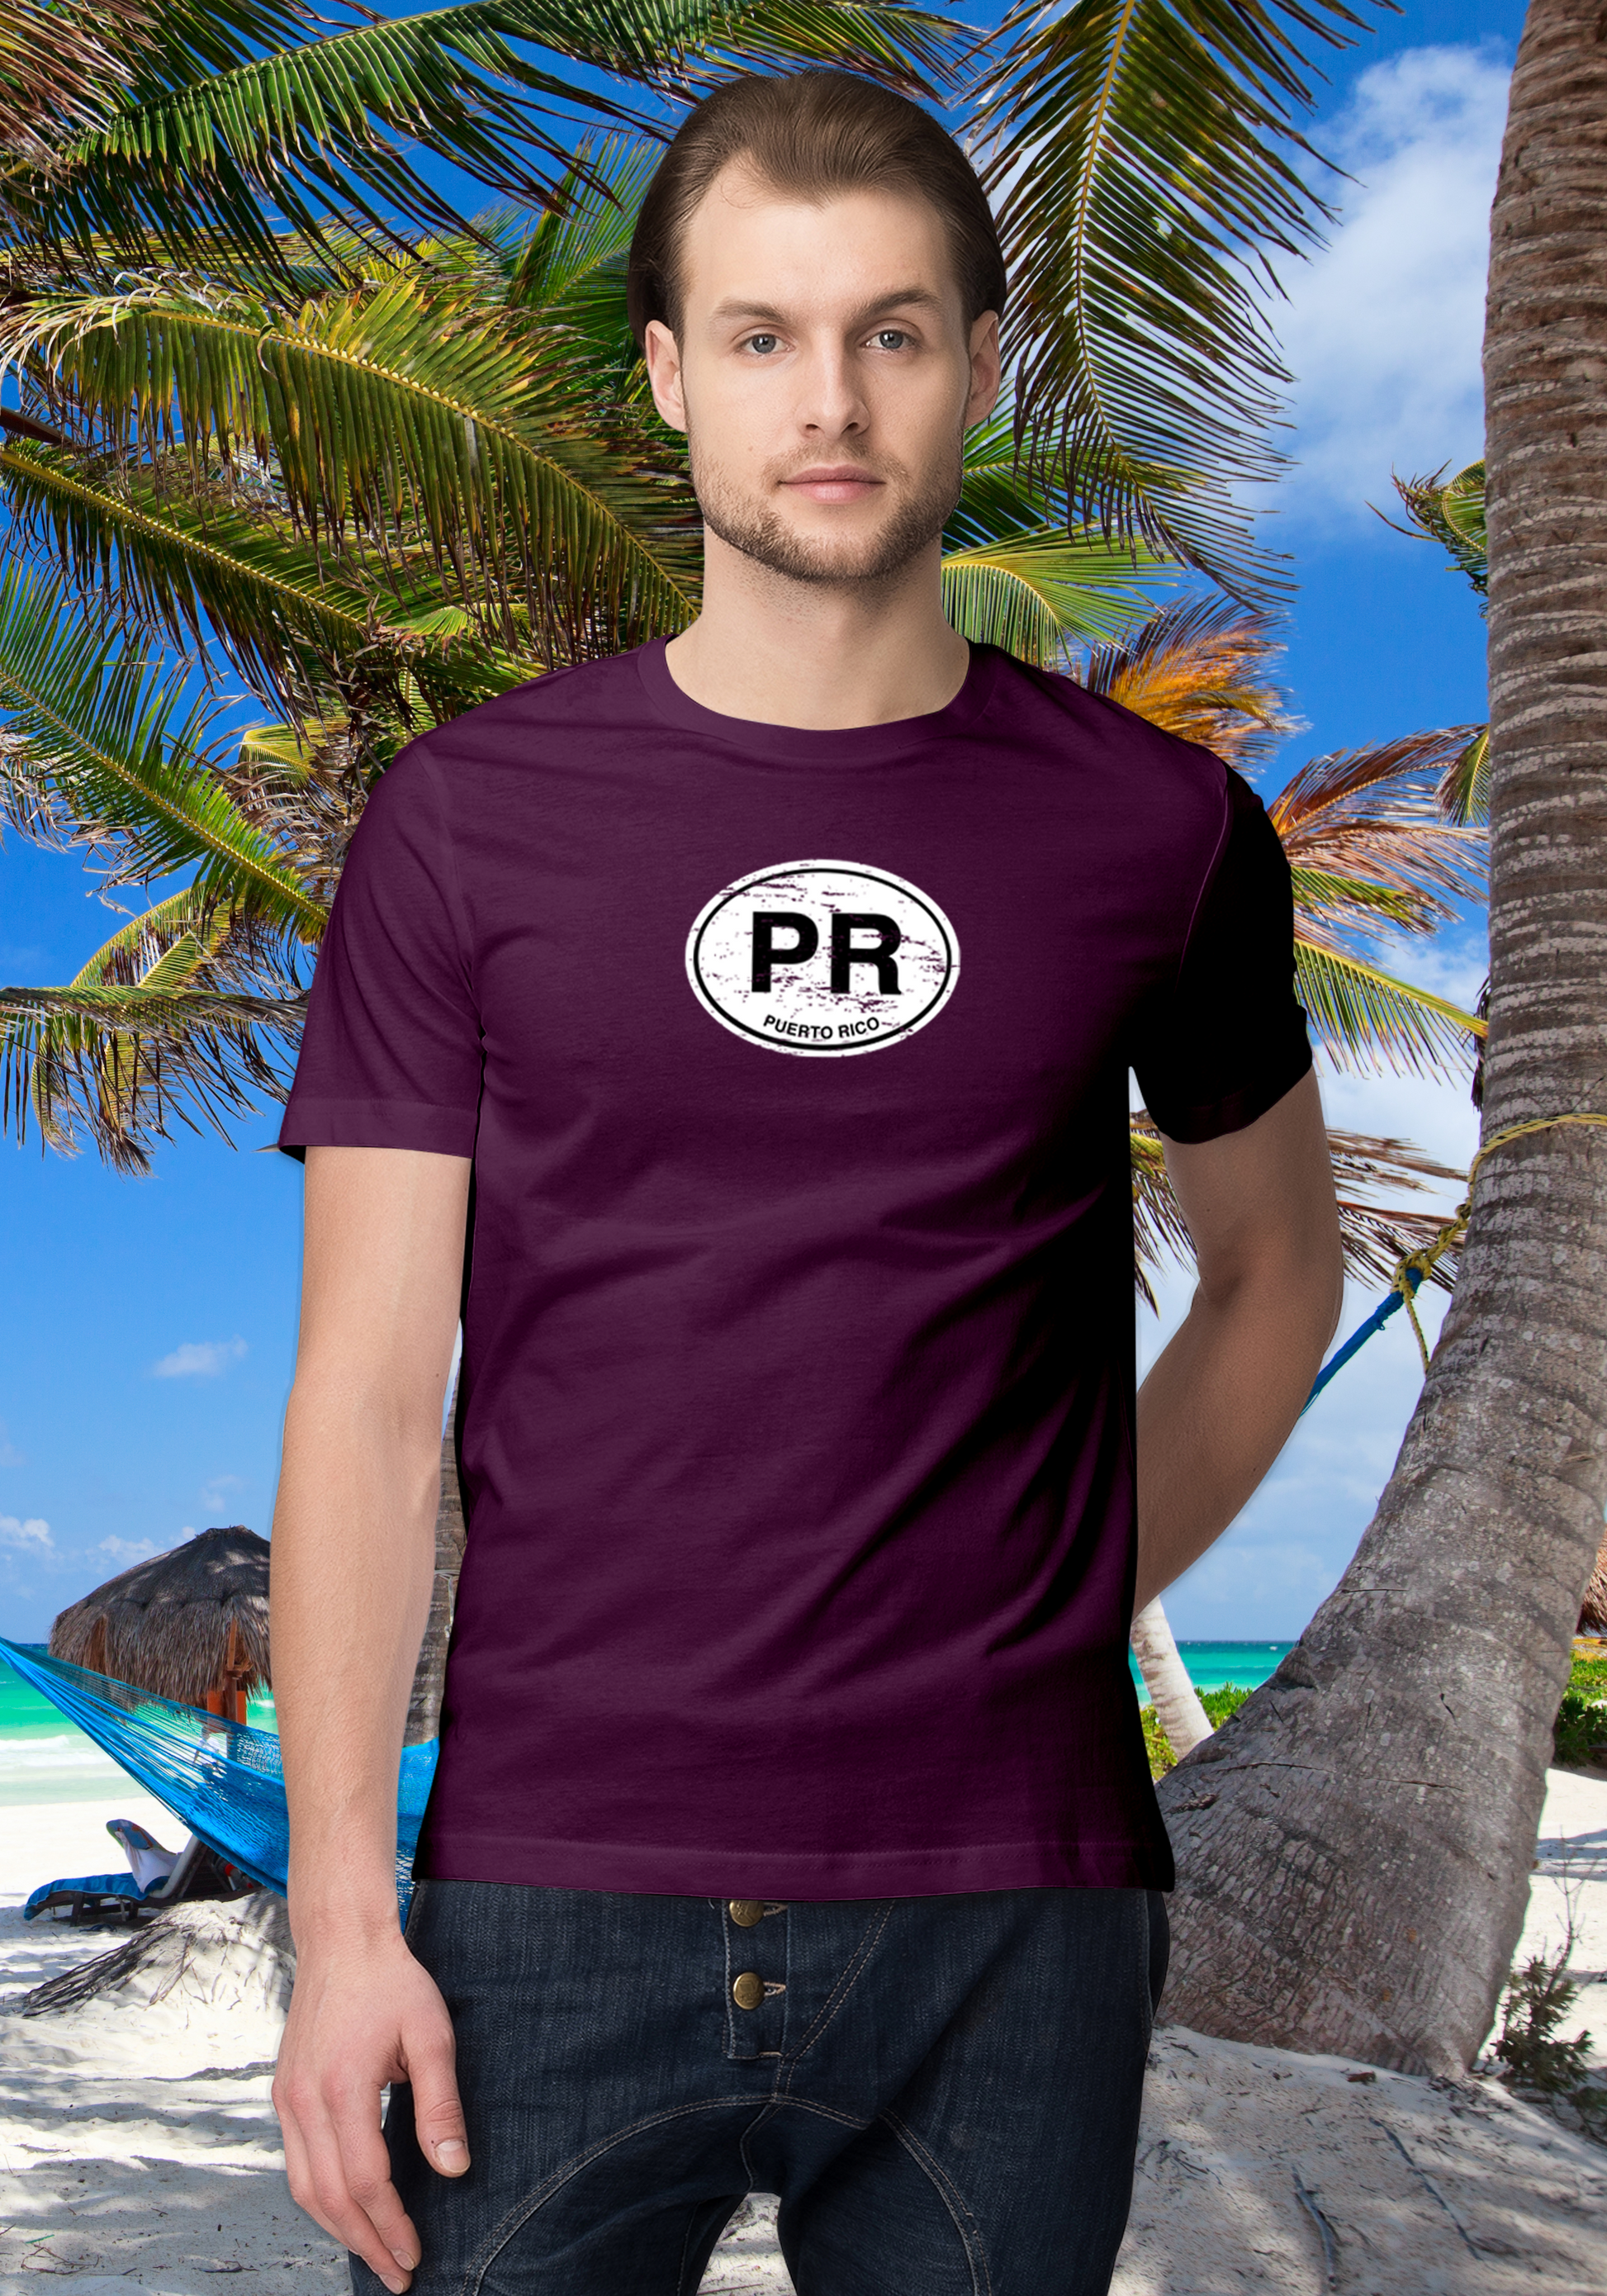 Puerto Rico Men's Classic T-Shirt Souvenirs - My Destination Location